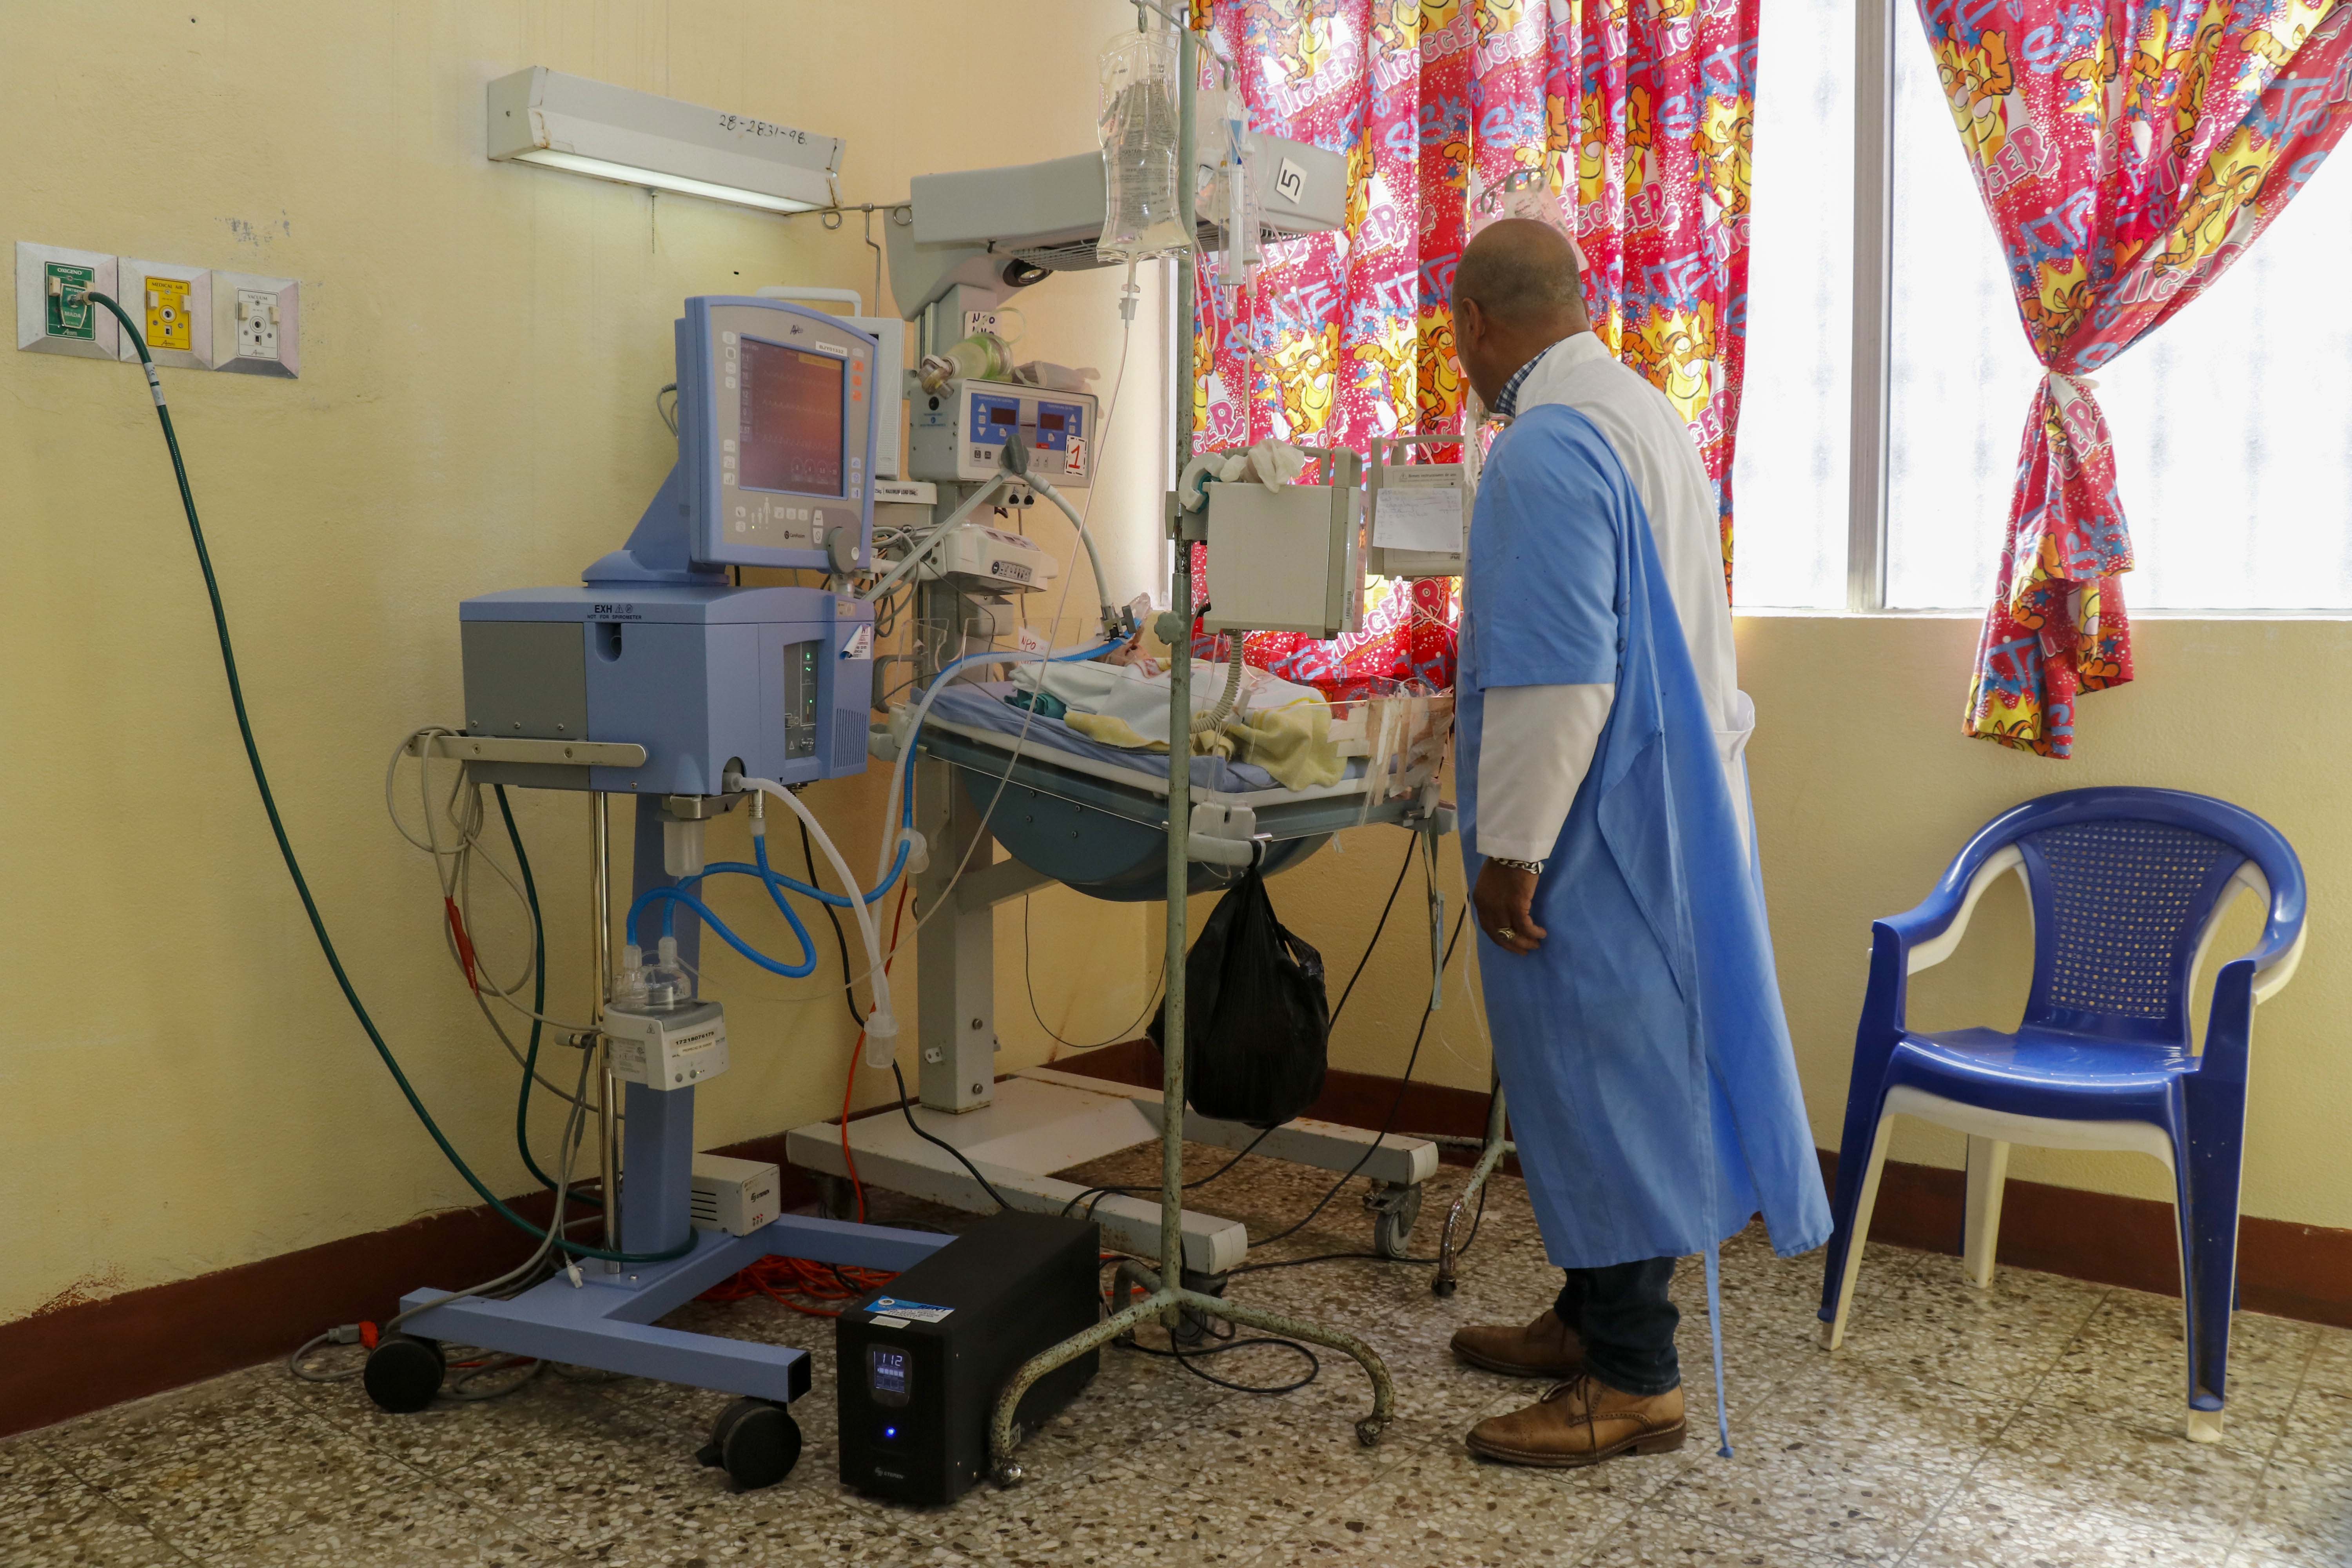 Actualmente hay cuatro recién nacidos conectados a los ventiladores médicos en el Hospital Nacional de Retalhuleu (Foto Prensa Libre: Rolando Miranda).